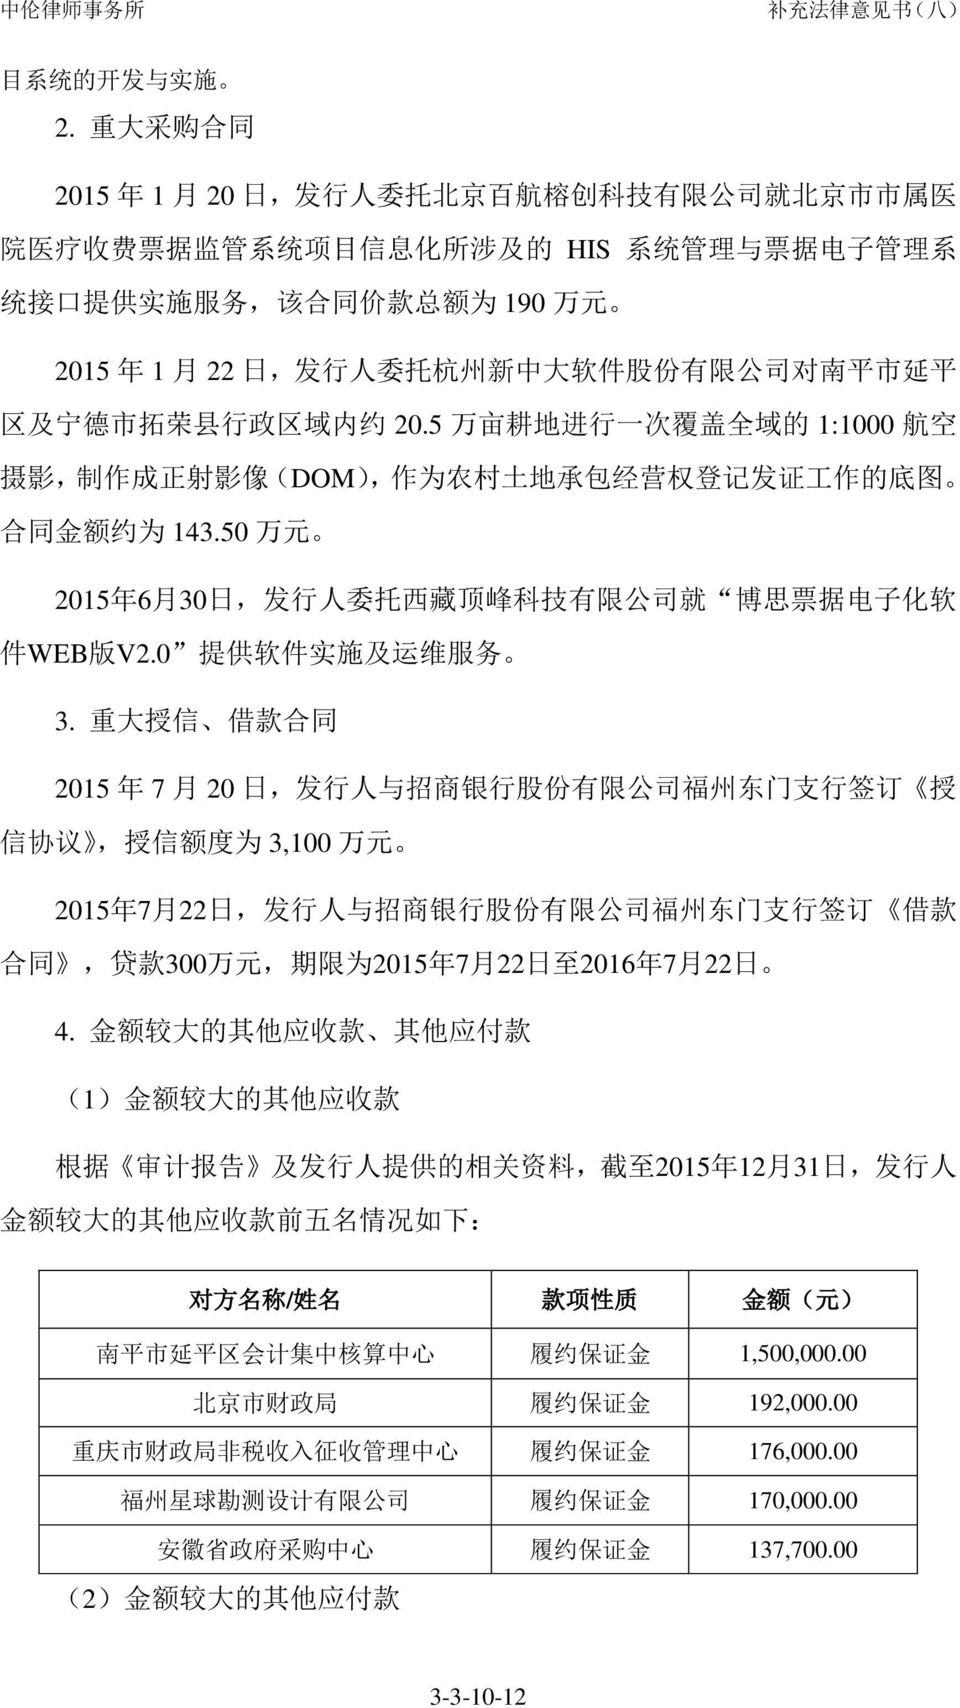 22 日, 发 行 人 委 托 杭 州 新 中 大 软 件 股 份 有 限 公 司 对 南 平 市 延 平 区 及 宁 德 市 拓 荣 县 行 政 区 域 内 约 20.